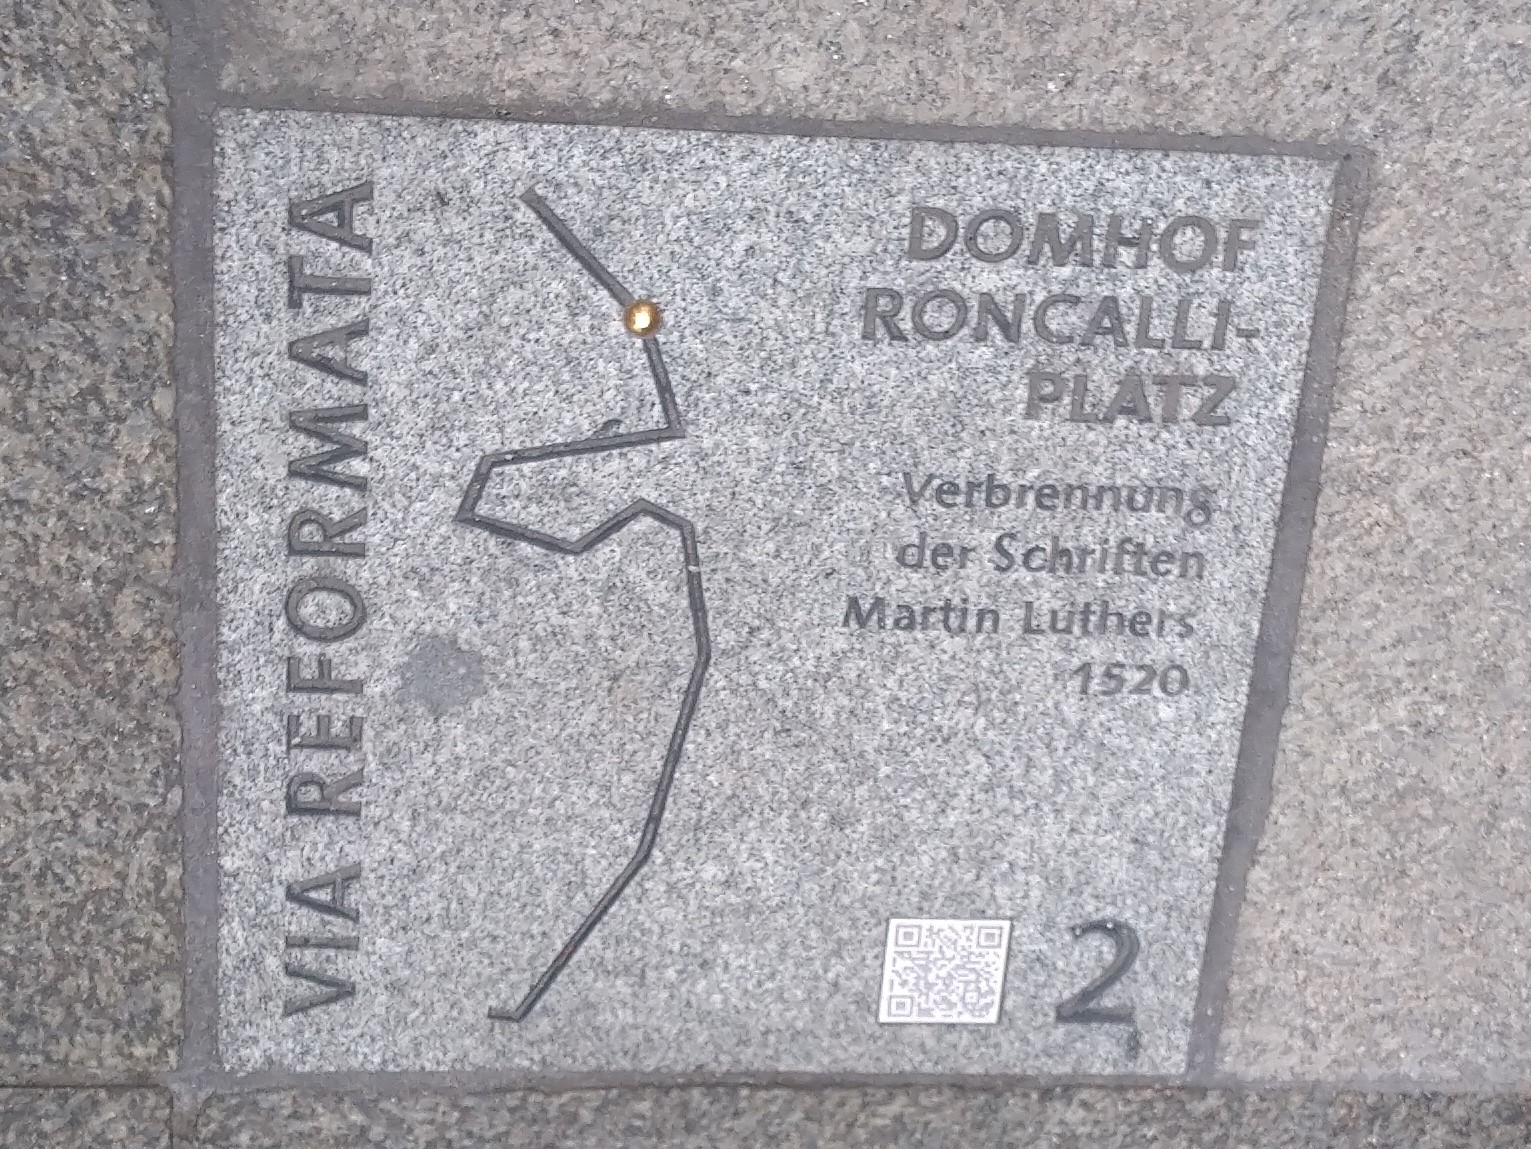 Die Bodenplatte zur Erinnerung an die Verbrennung der Werke von Martin Luther auf dem Kölner Roncalliplatz. Foto: Hildegard Mathies/Stadtdekanat Köln